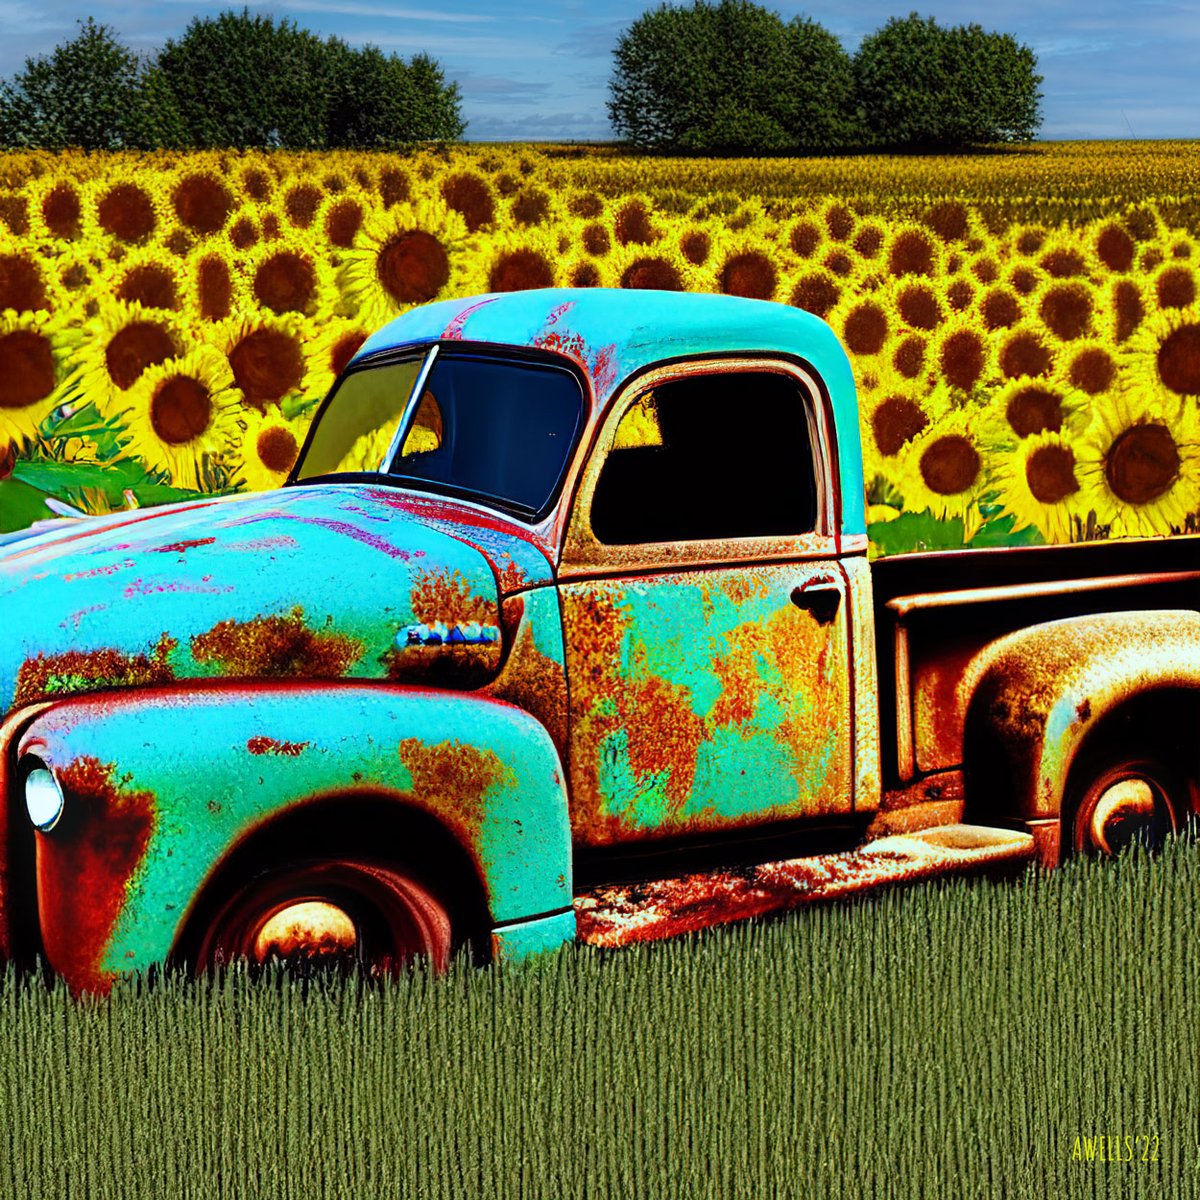 #FieldOfDreams 09.19.2022 #VintagePickup #Sunflowers